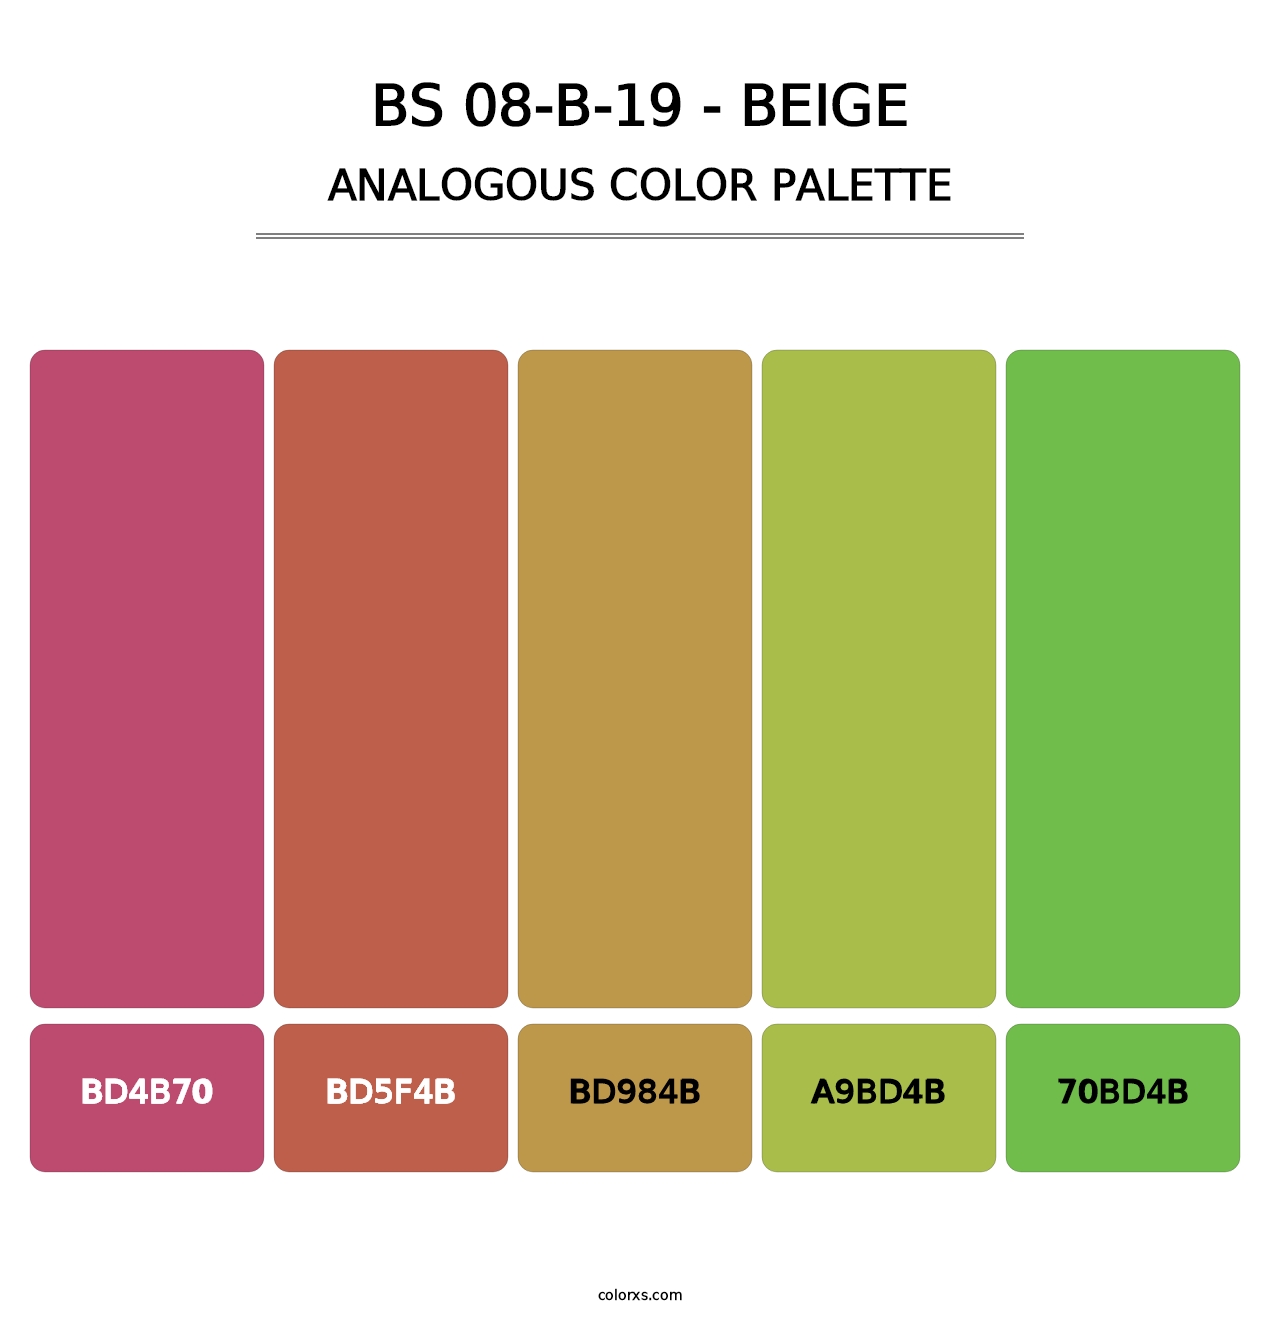 BS 08-B-19 - Beige - Analogous Color Palette